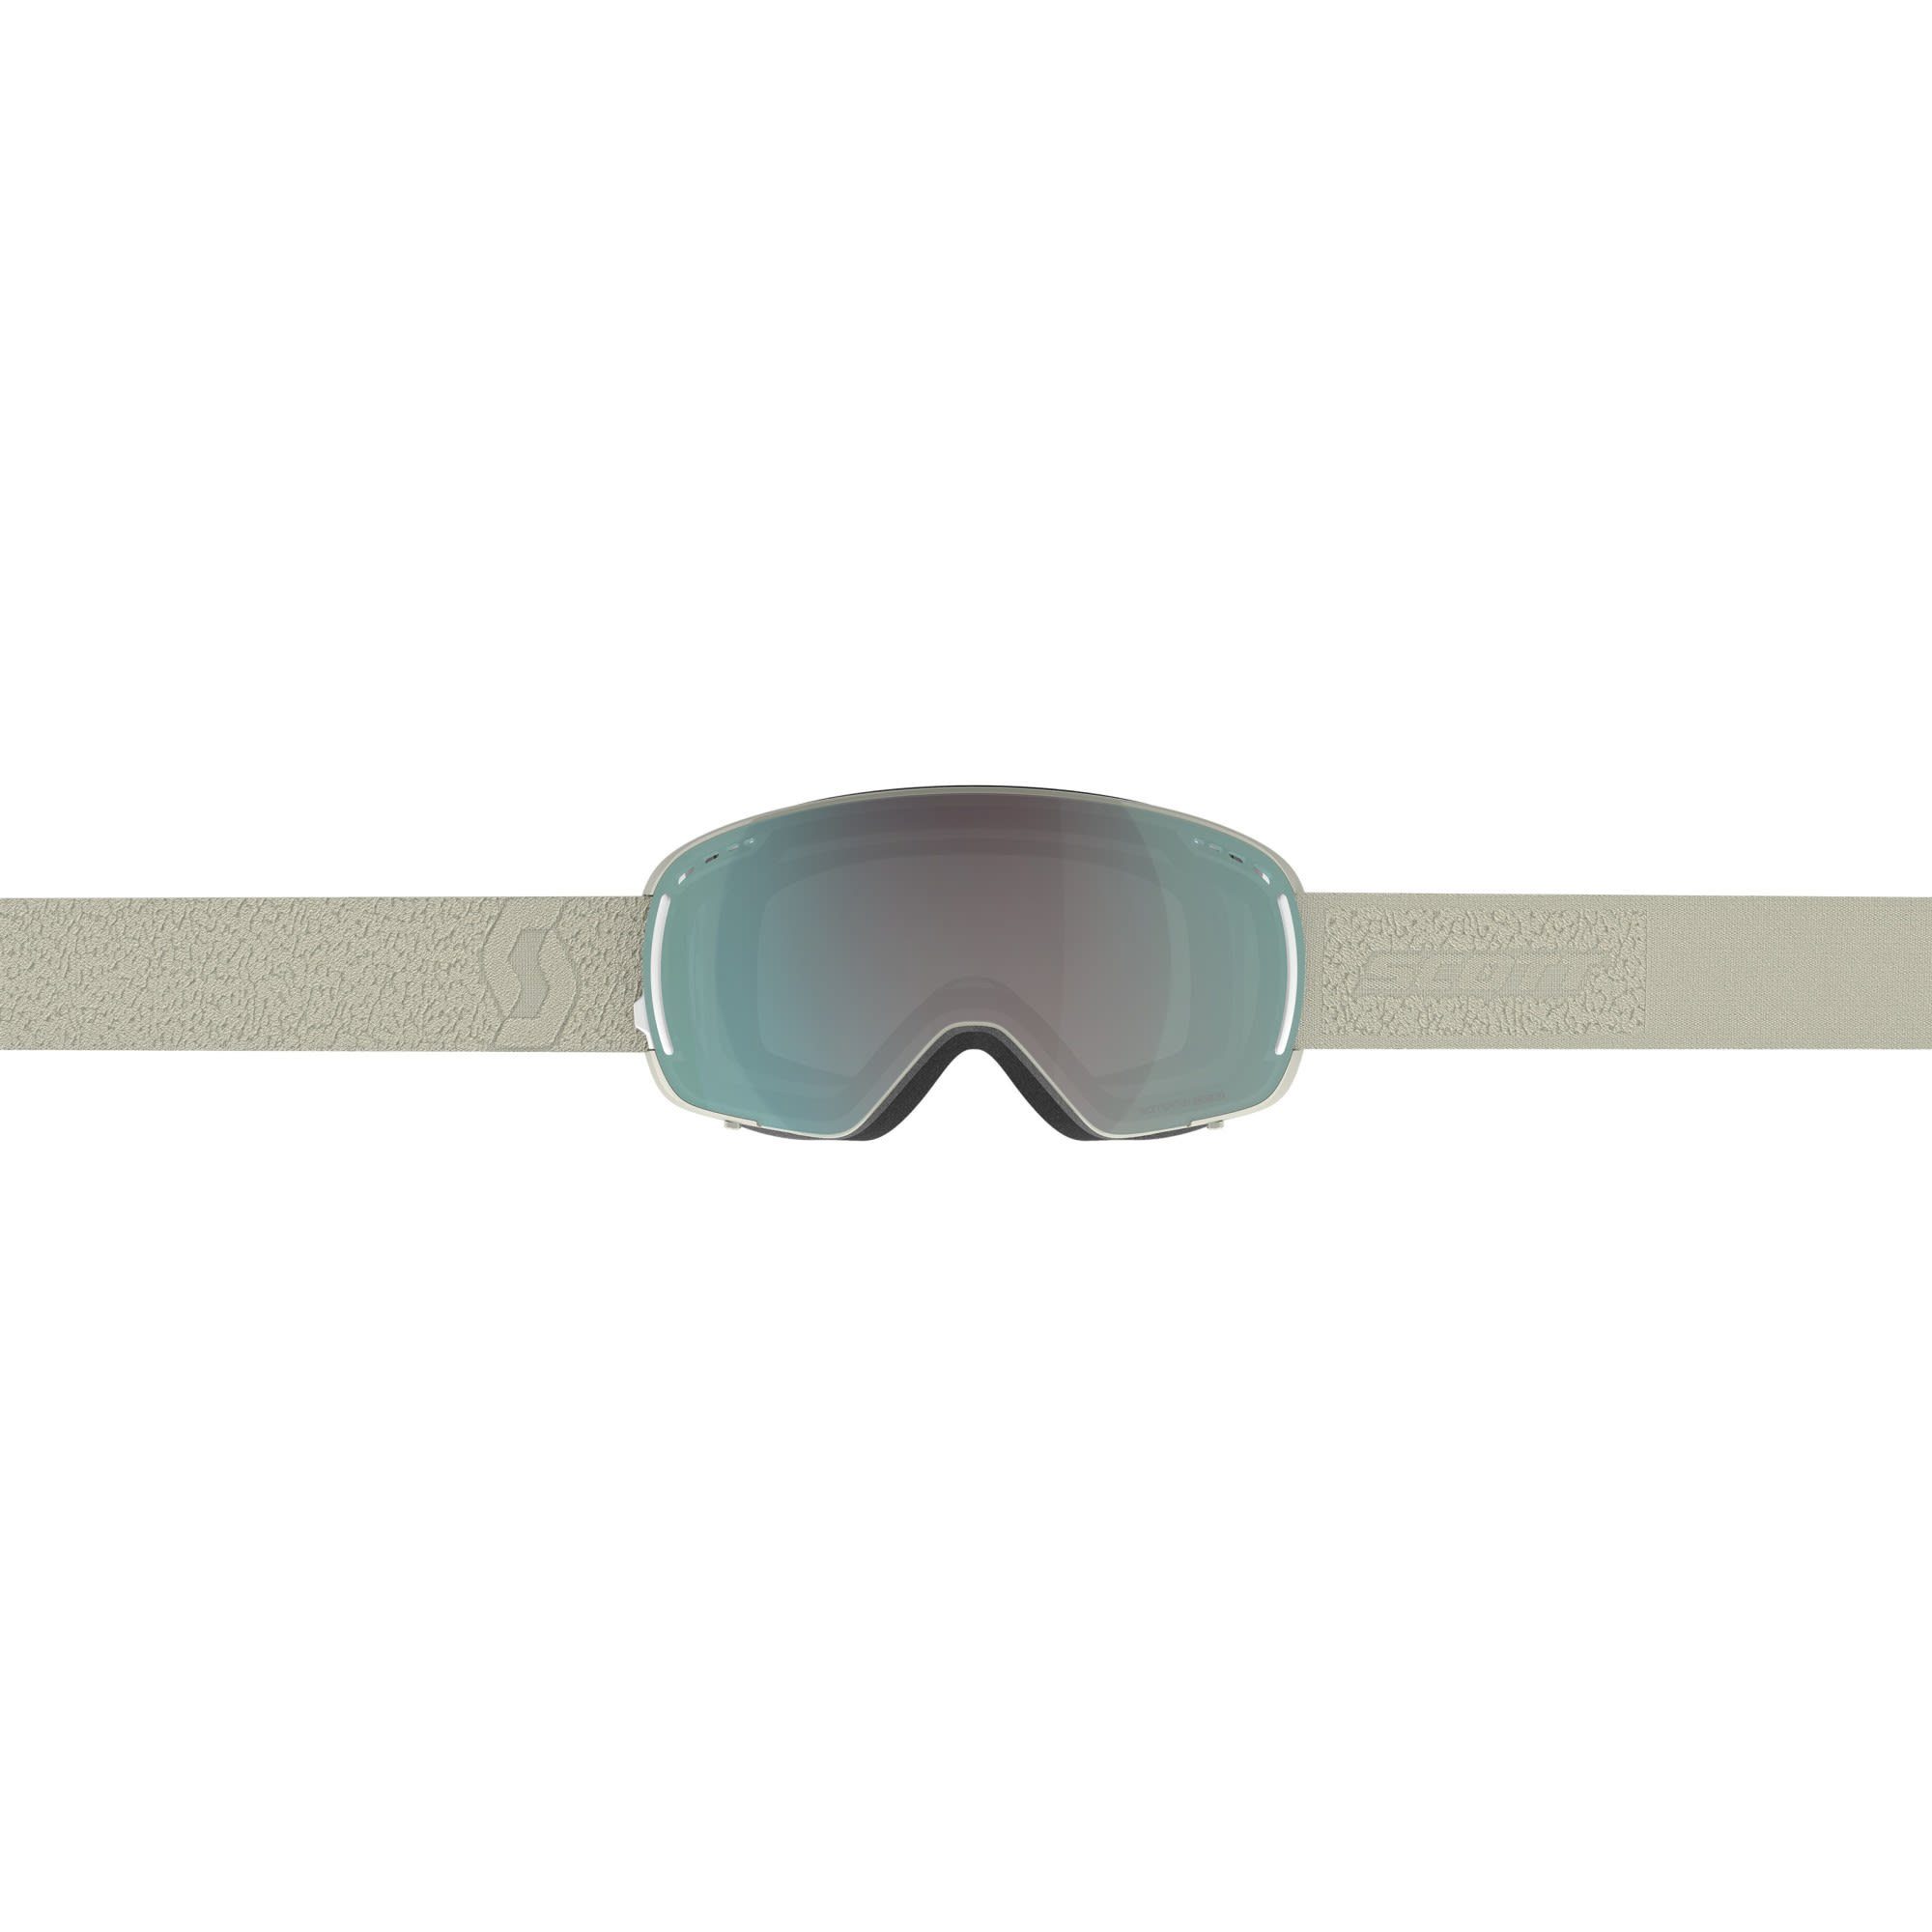 Accessoires Compact Goggle Skibrille Enhancer Beige - Chrome Scott Lcg Light Scott Aqua